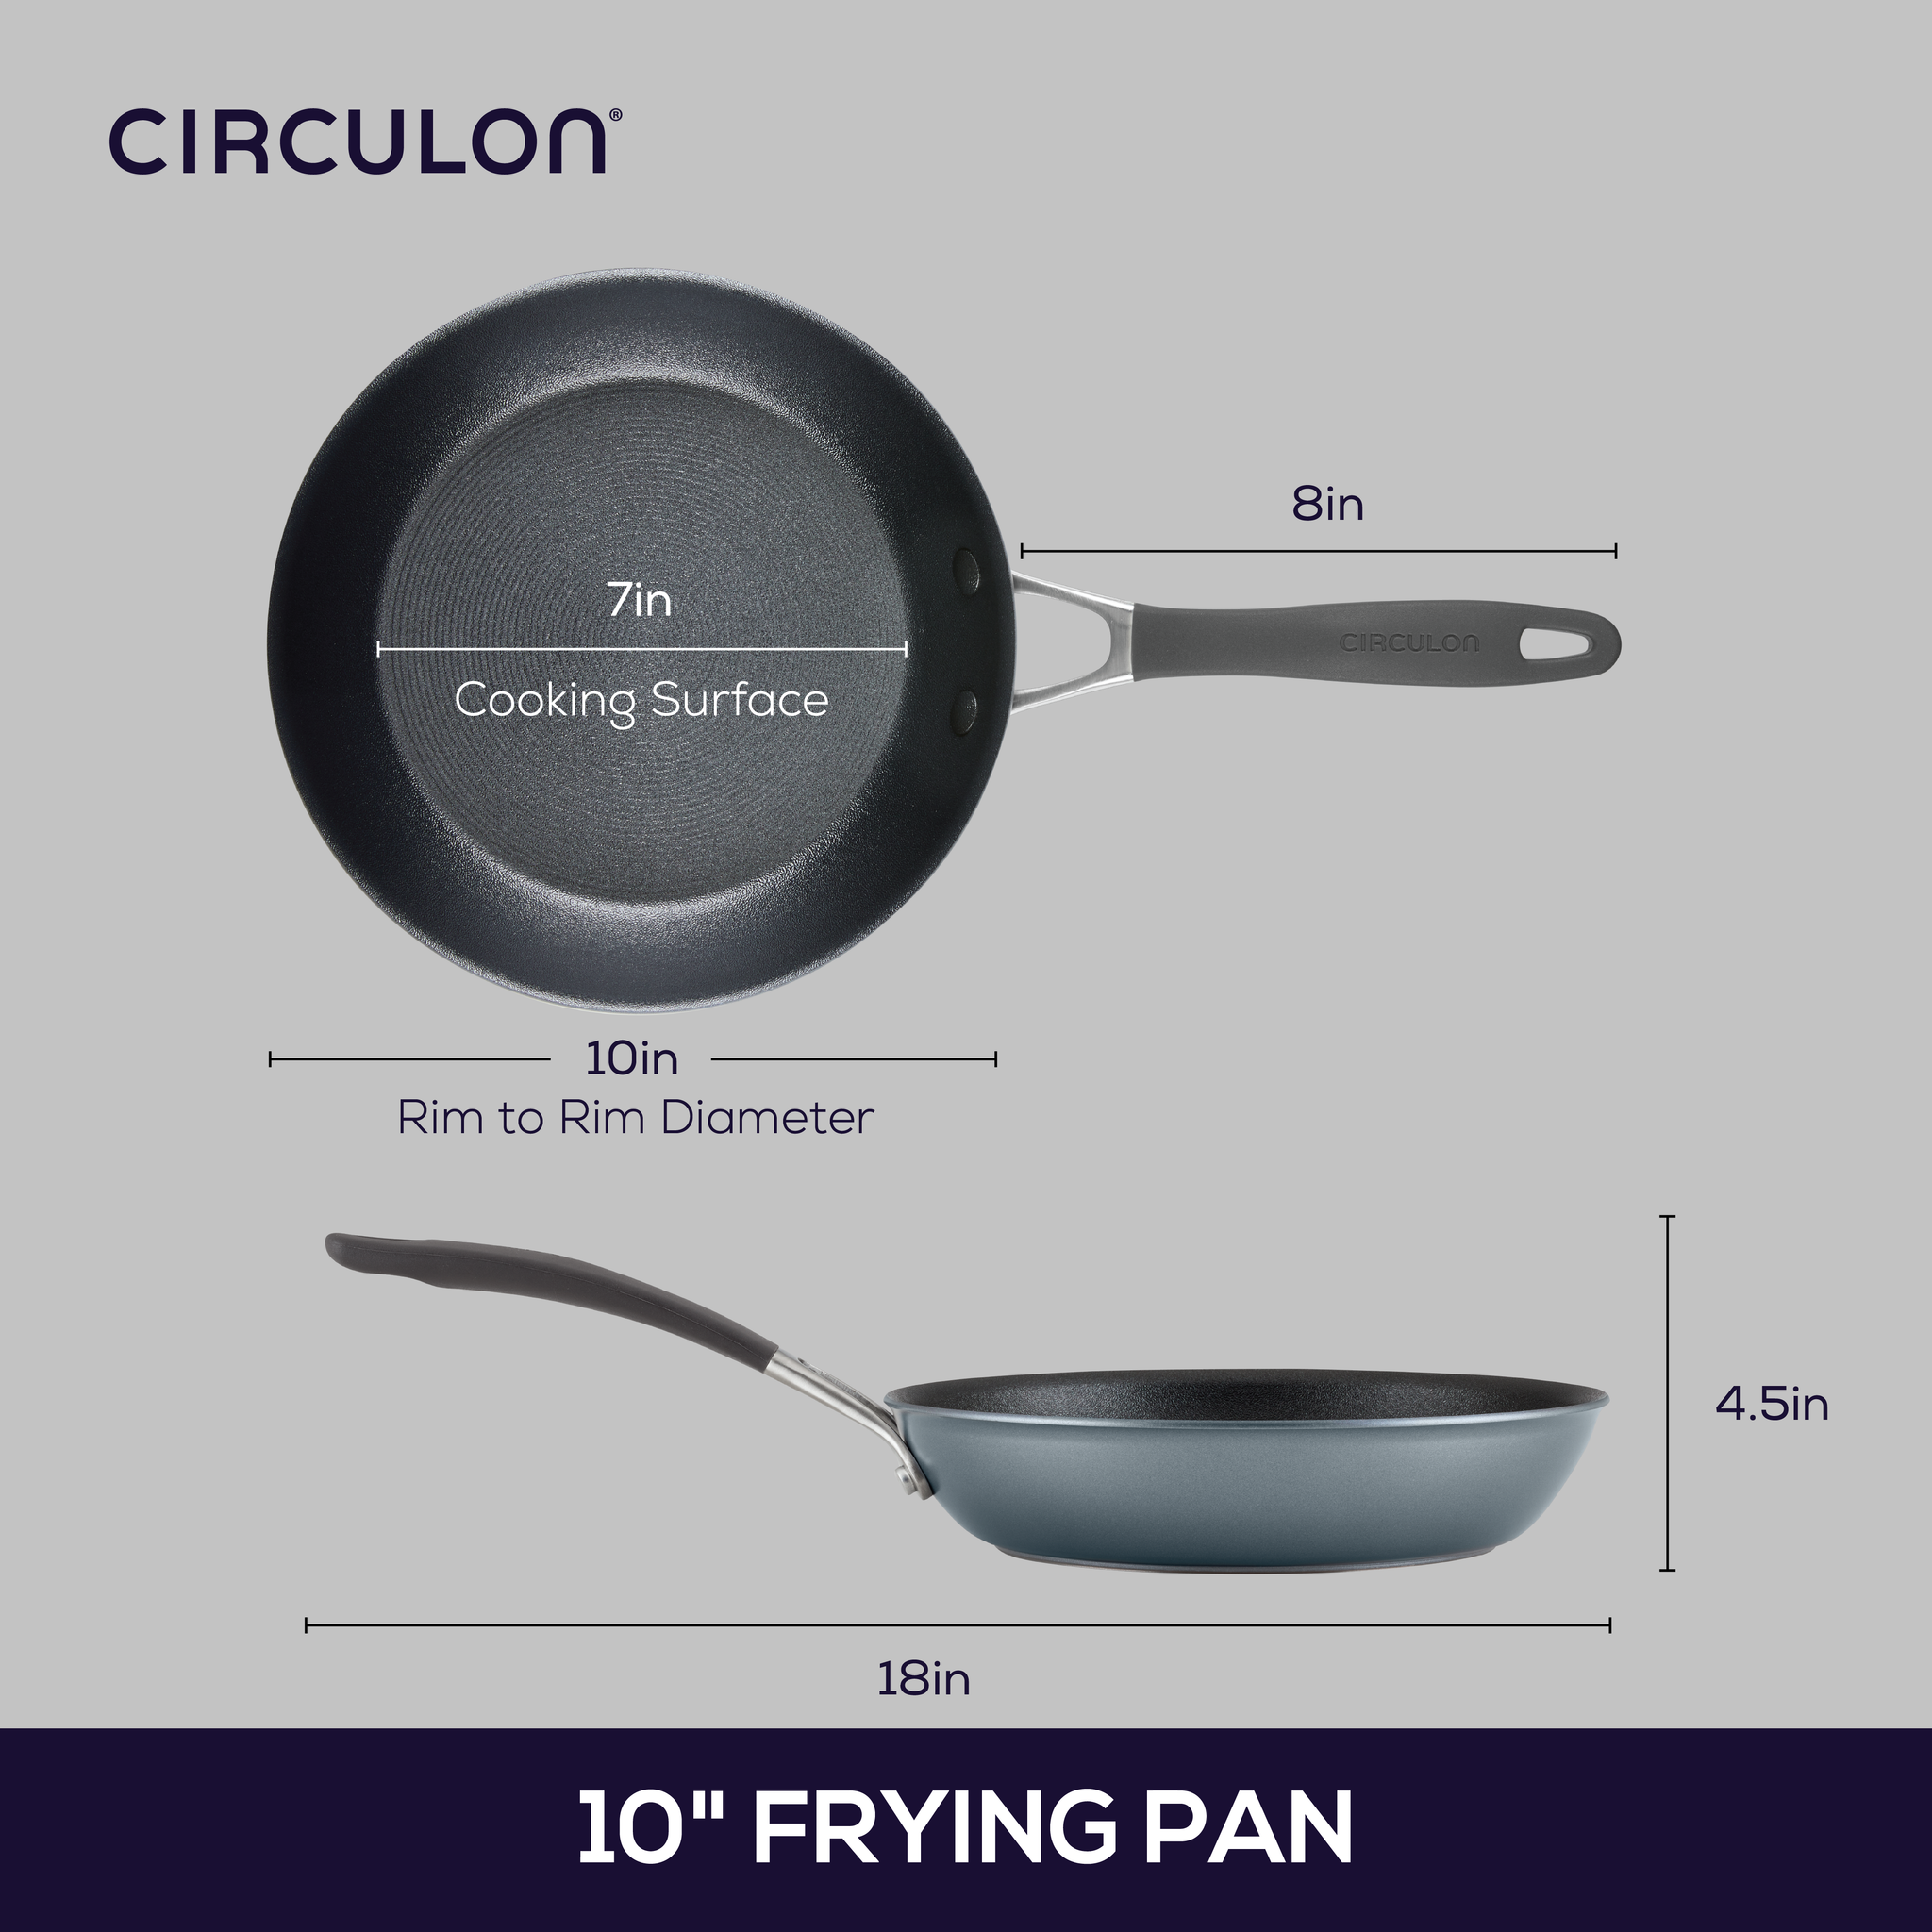 10-Piece ScratchDefense Nonstick Cookware Set – Circulon